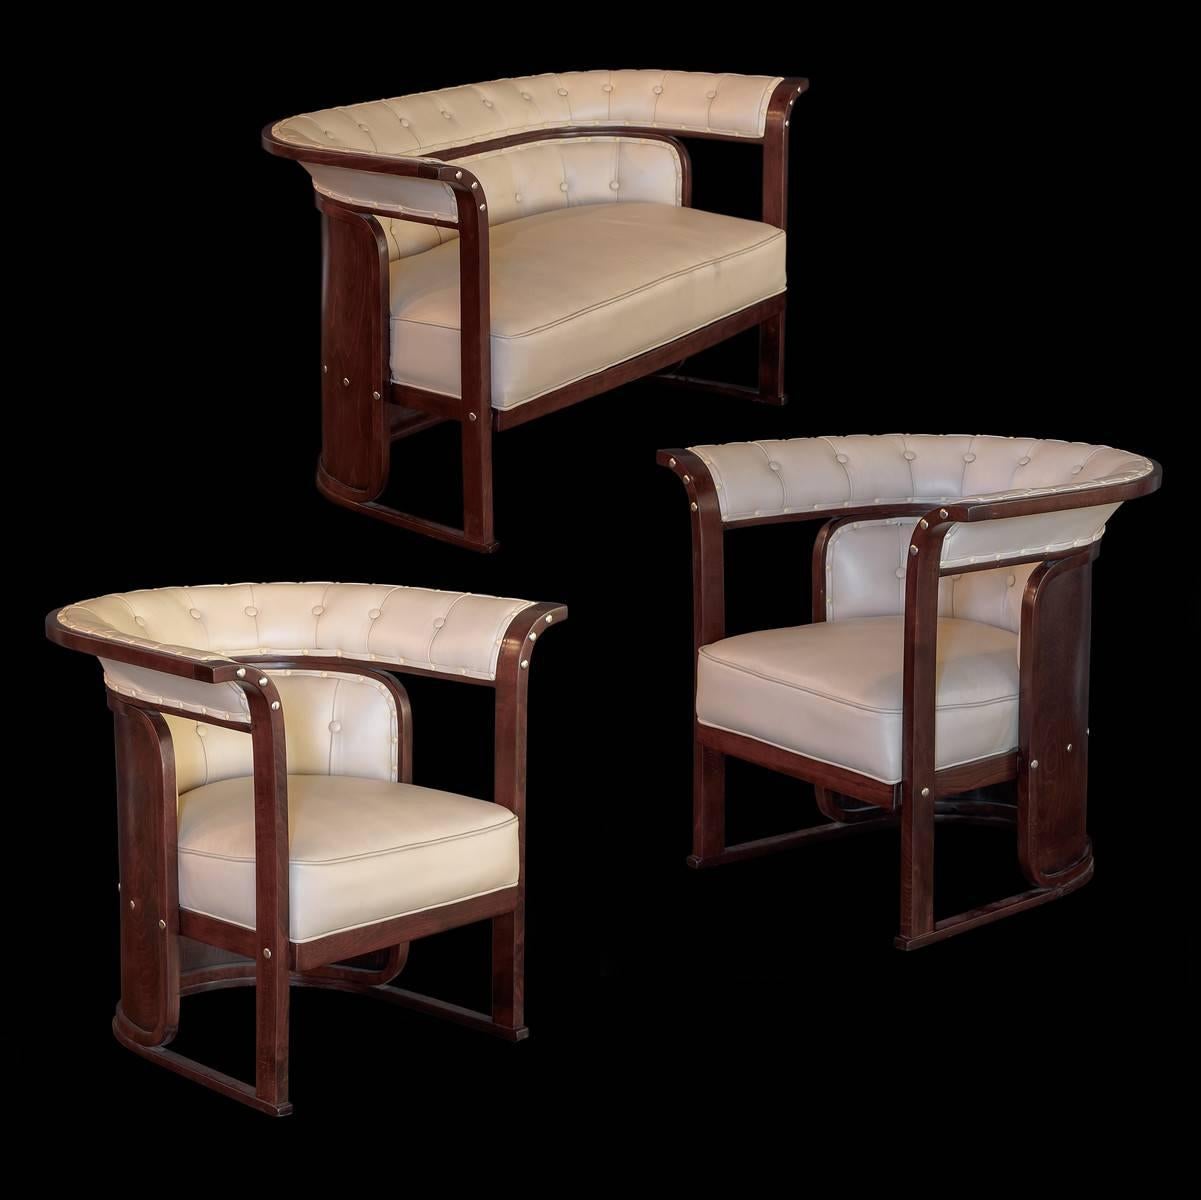 Eine wunderbare Wiener Secessionisten-Sitzgruppe von Josef Hoffman, hergestellt vor 1920 von J & J Kohn, Wien, Österreich. Die Sitzgruppe bestand aus einem Sofa und zwei Sesseln oder Clubsesseln. 

Gefertigt aus fein gemasertem, gebogenem und